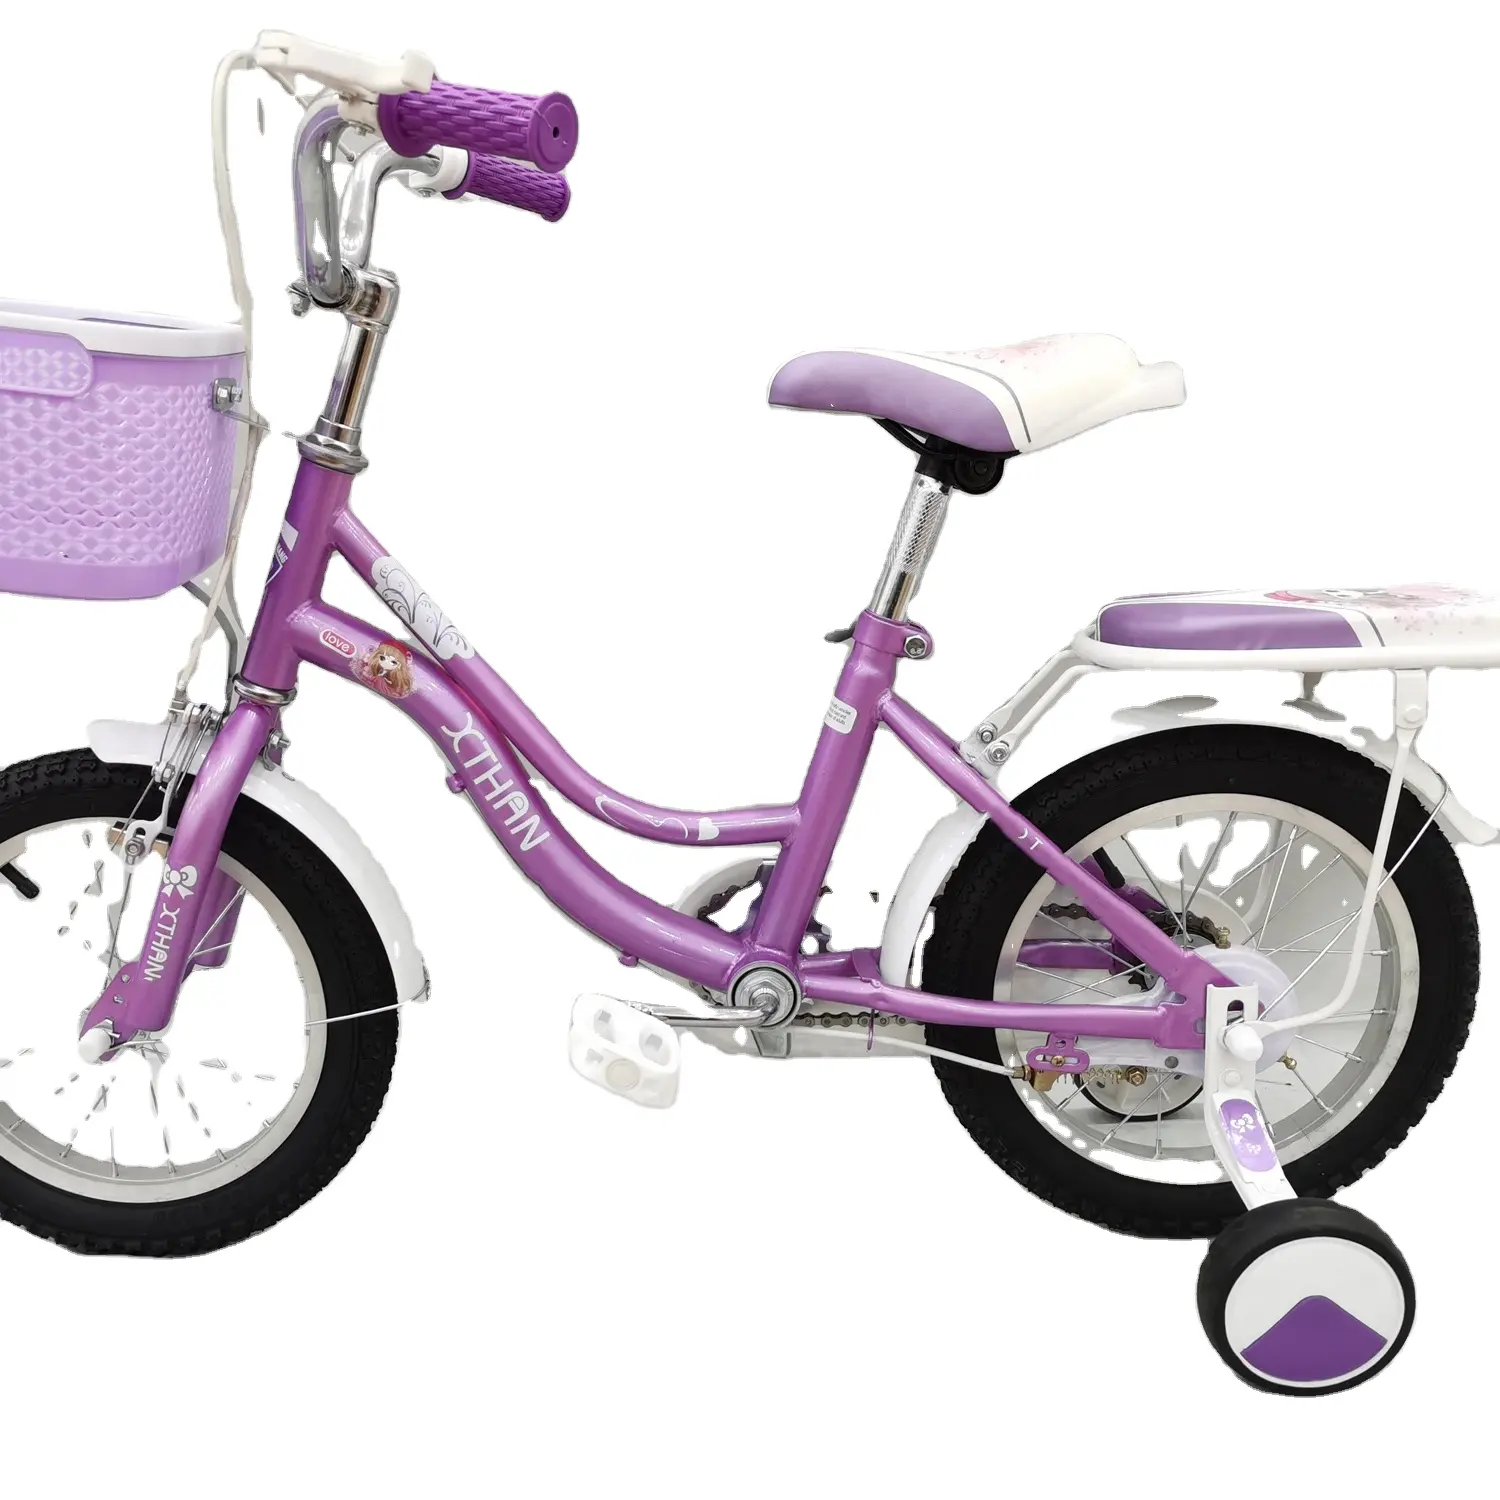 Bicicleta infantil XTH de vendas diretas da fábrica com estrutura de aço de alto carbono adequada para crianças de 6 a 10 anos de idade